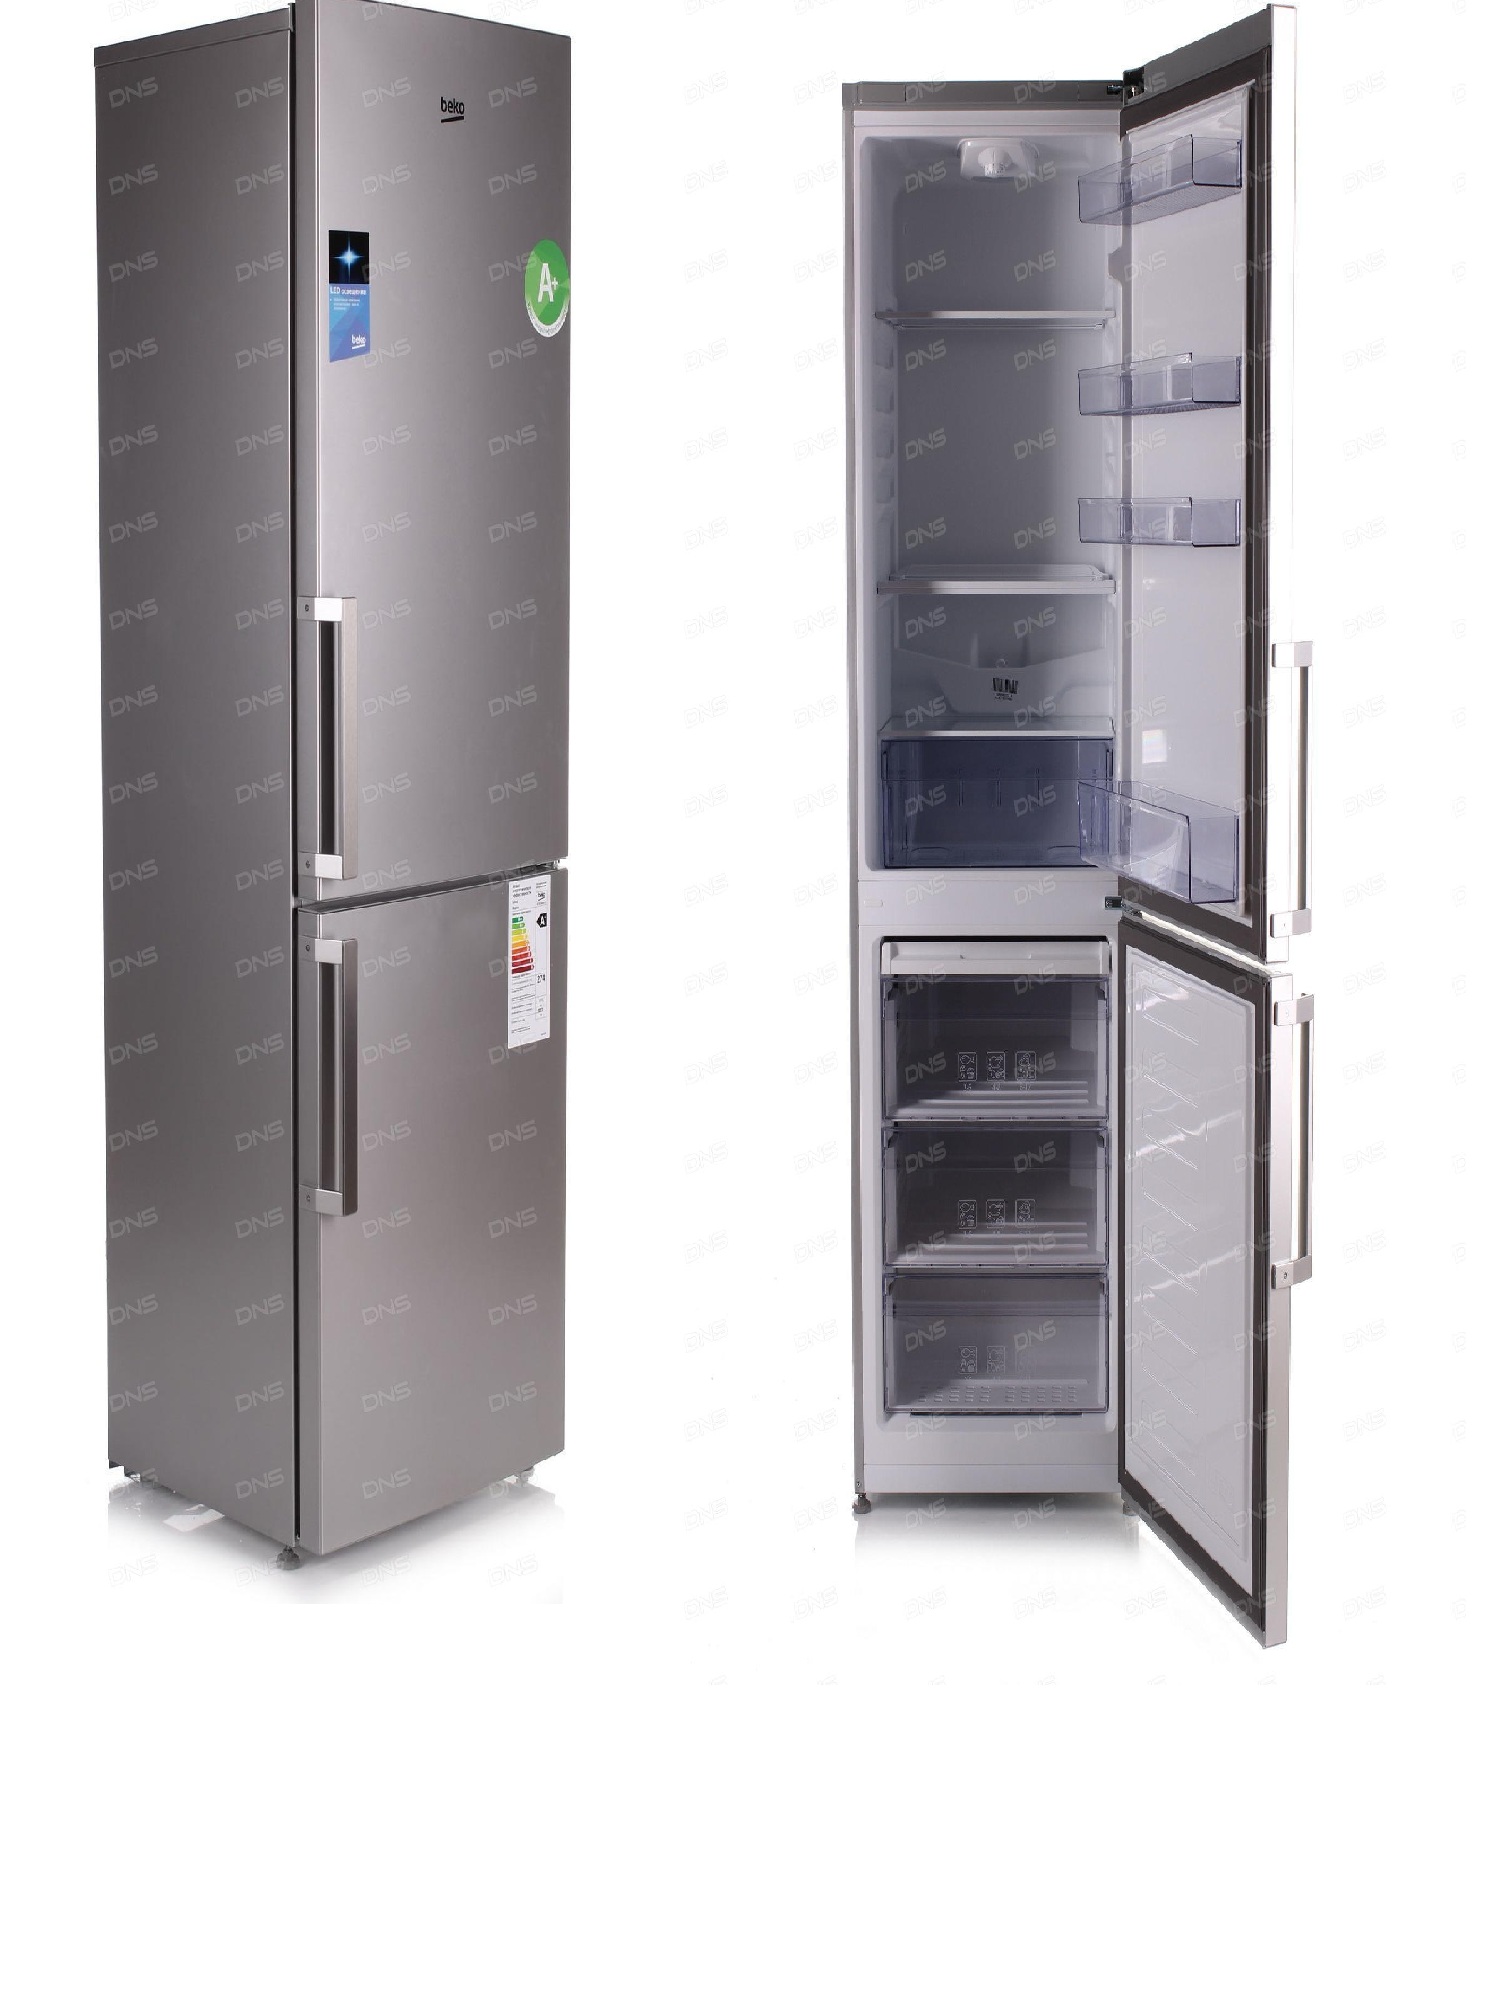 холодильник beko rcsk340m21s, купить в Красноярске холодильник beko rcsk340m21s,  купить в Красноярске дешево холодильник beko rcsk340m21s, купить в Красноярске минимальной цене холодильник beko rcsk340m21s